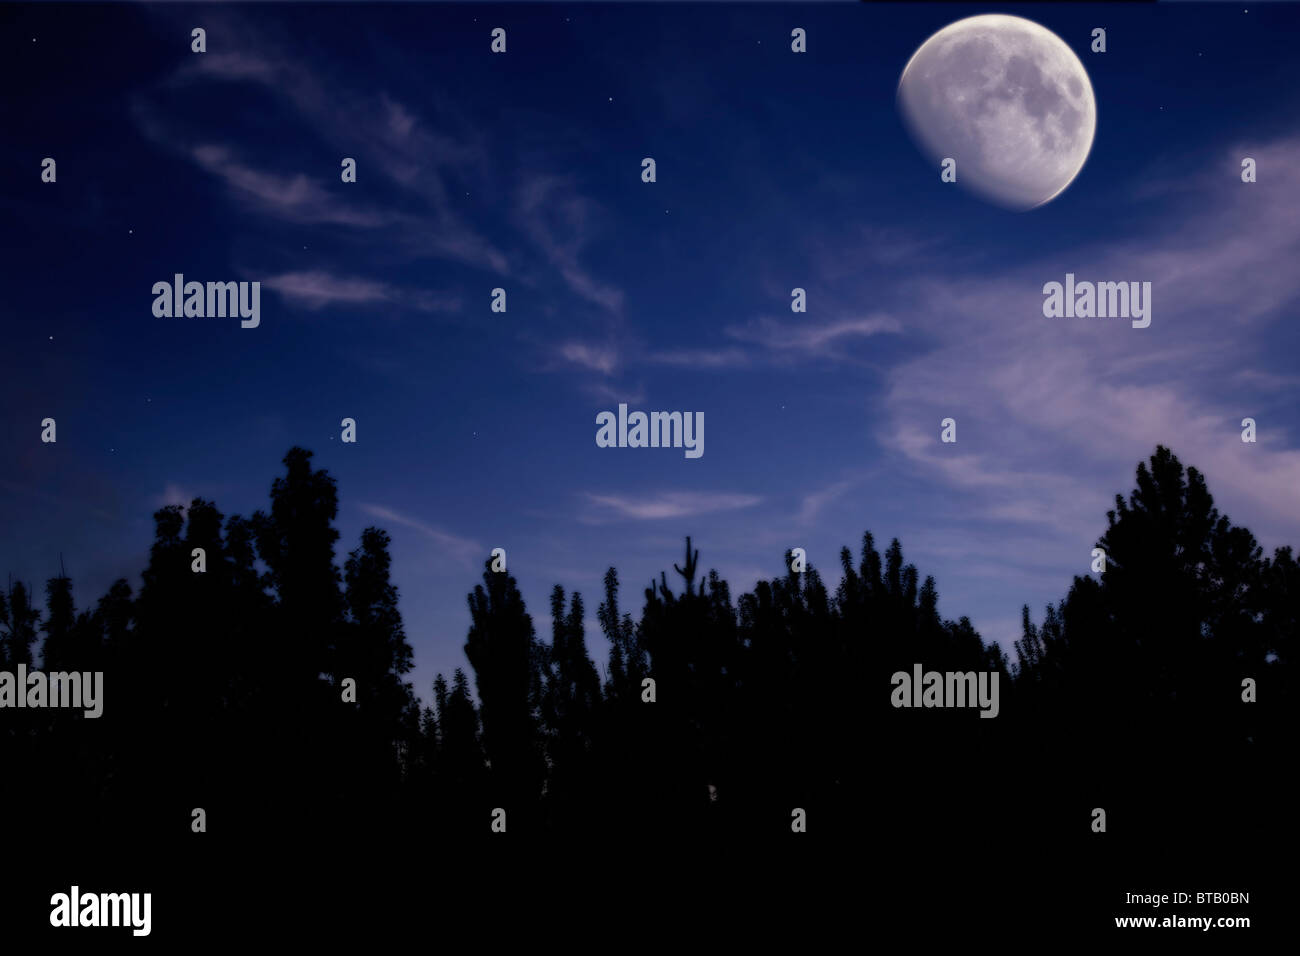 Paysage de nuit avec la lune, les arbres, les nuages et les étoiles silhouette Banque D'Images